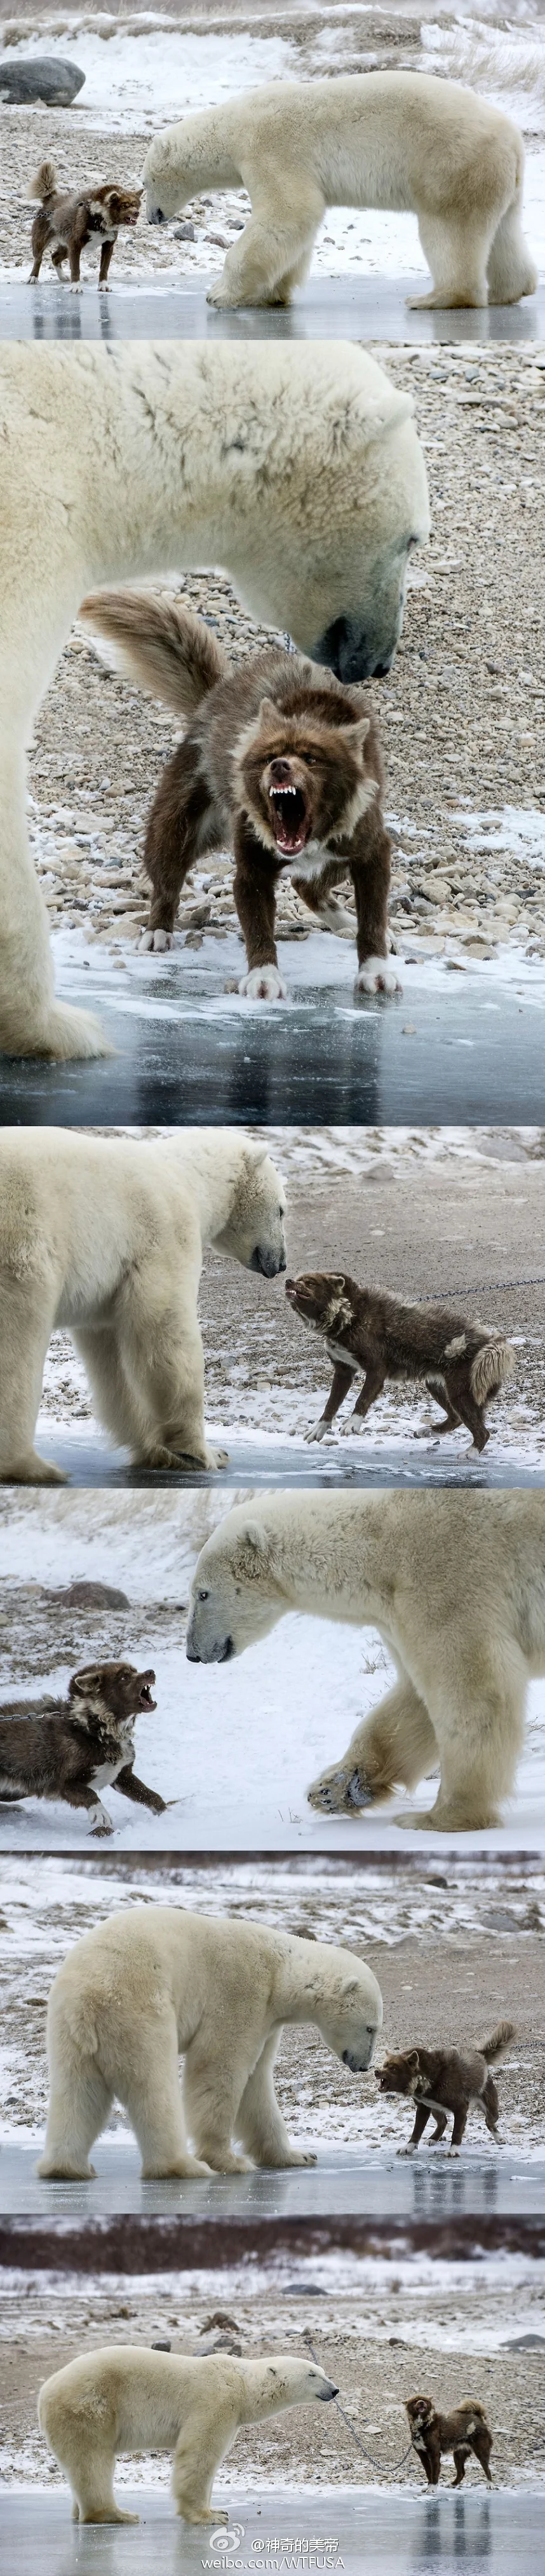 曝加拿大最凶悍哈士奇与北极熊对吼(图)